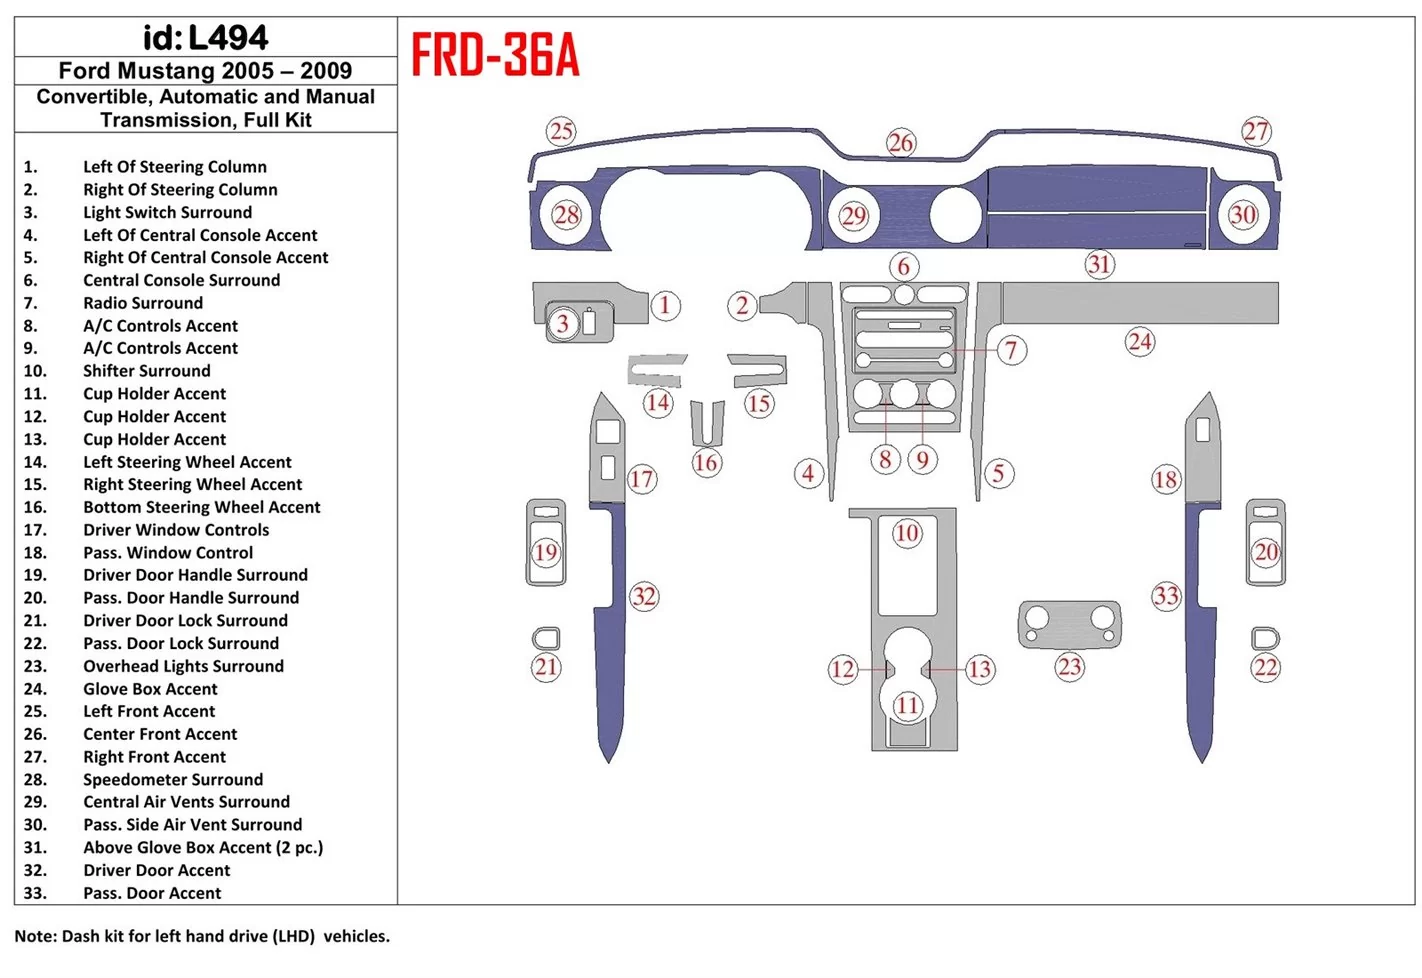 Ford Mustang 2005-2009 Folding roof-Cabrio, Ensemble Complet BD Kit la décoration du tableau de bord - 1 - habillage decor de ta